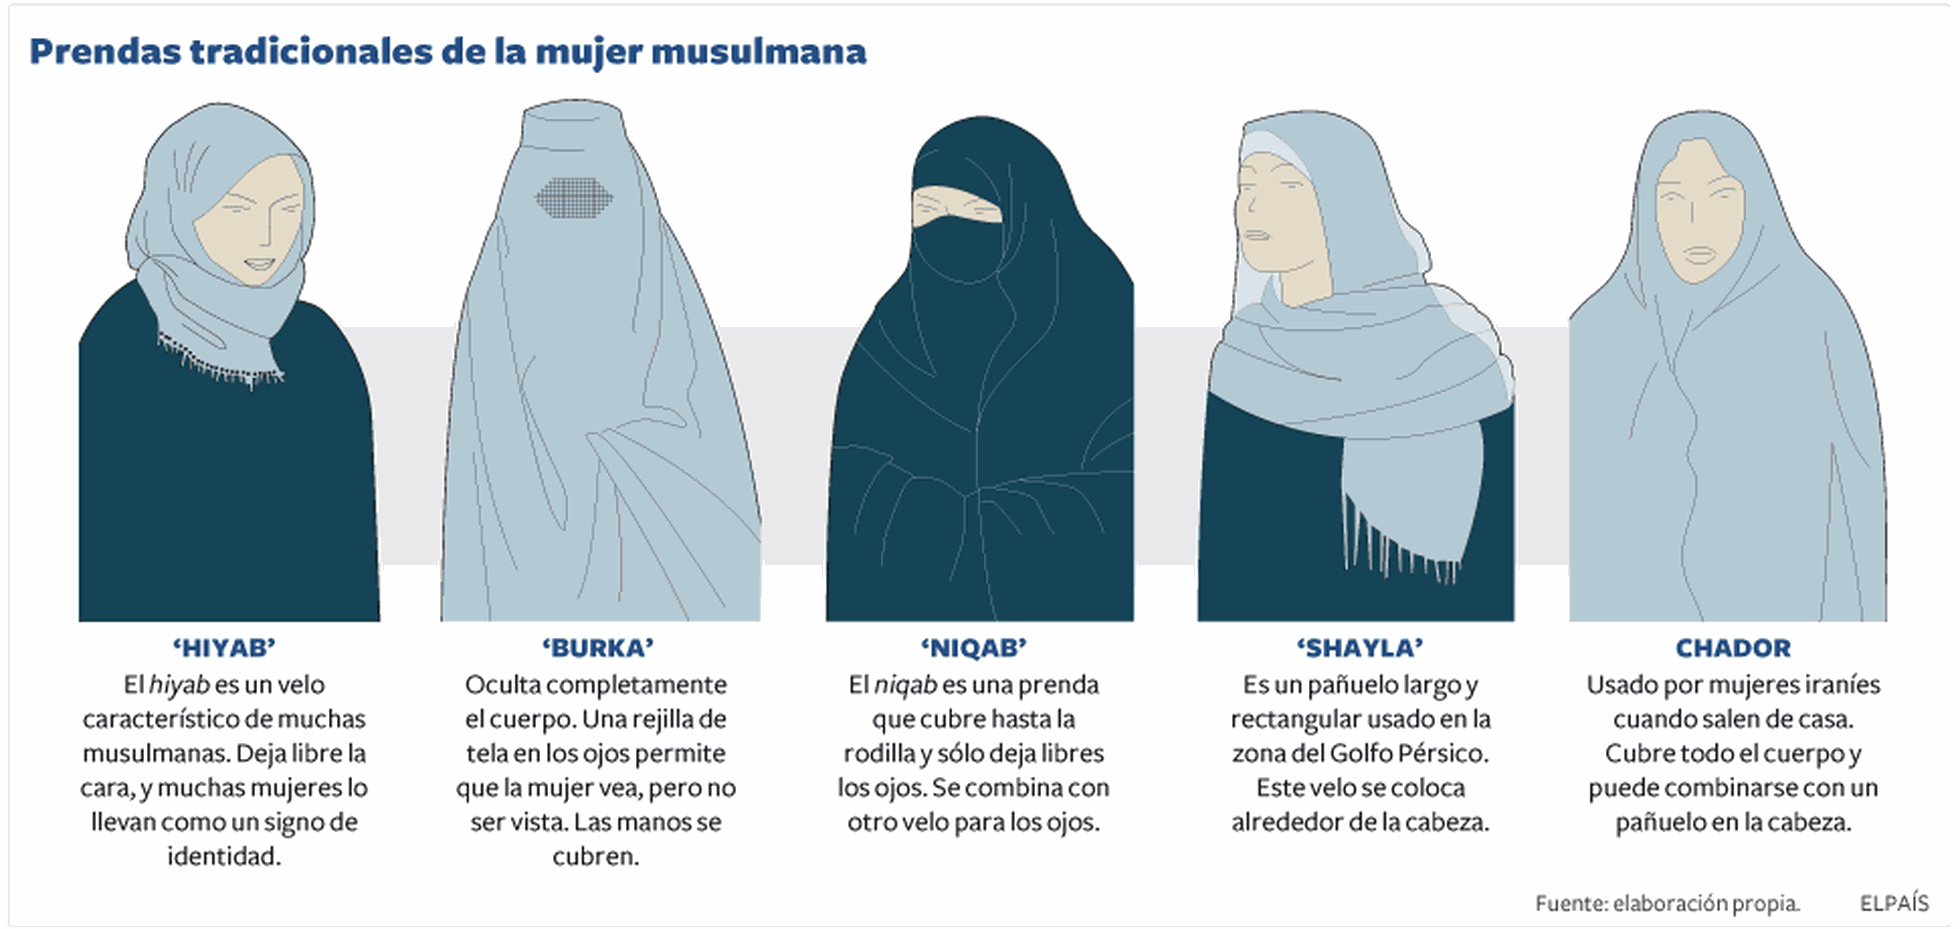 Prendas Tradicionales De La Mujer Musulmana Sociedad El PaÍs 2925